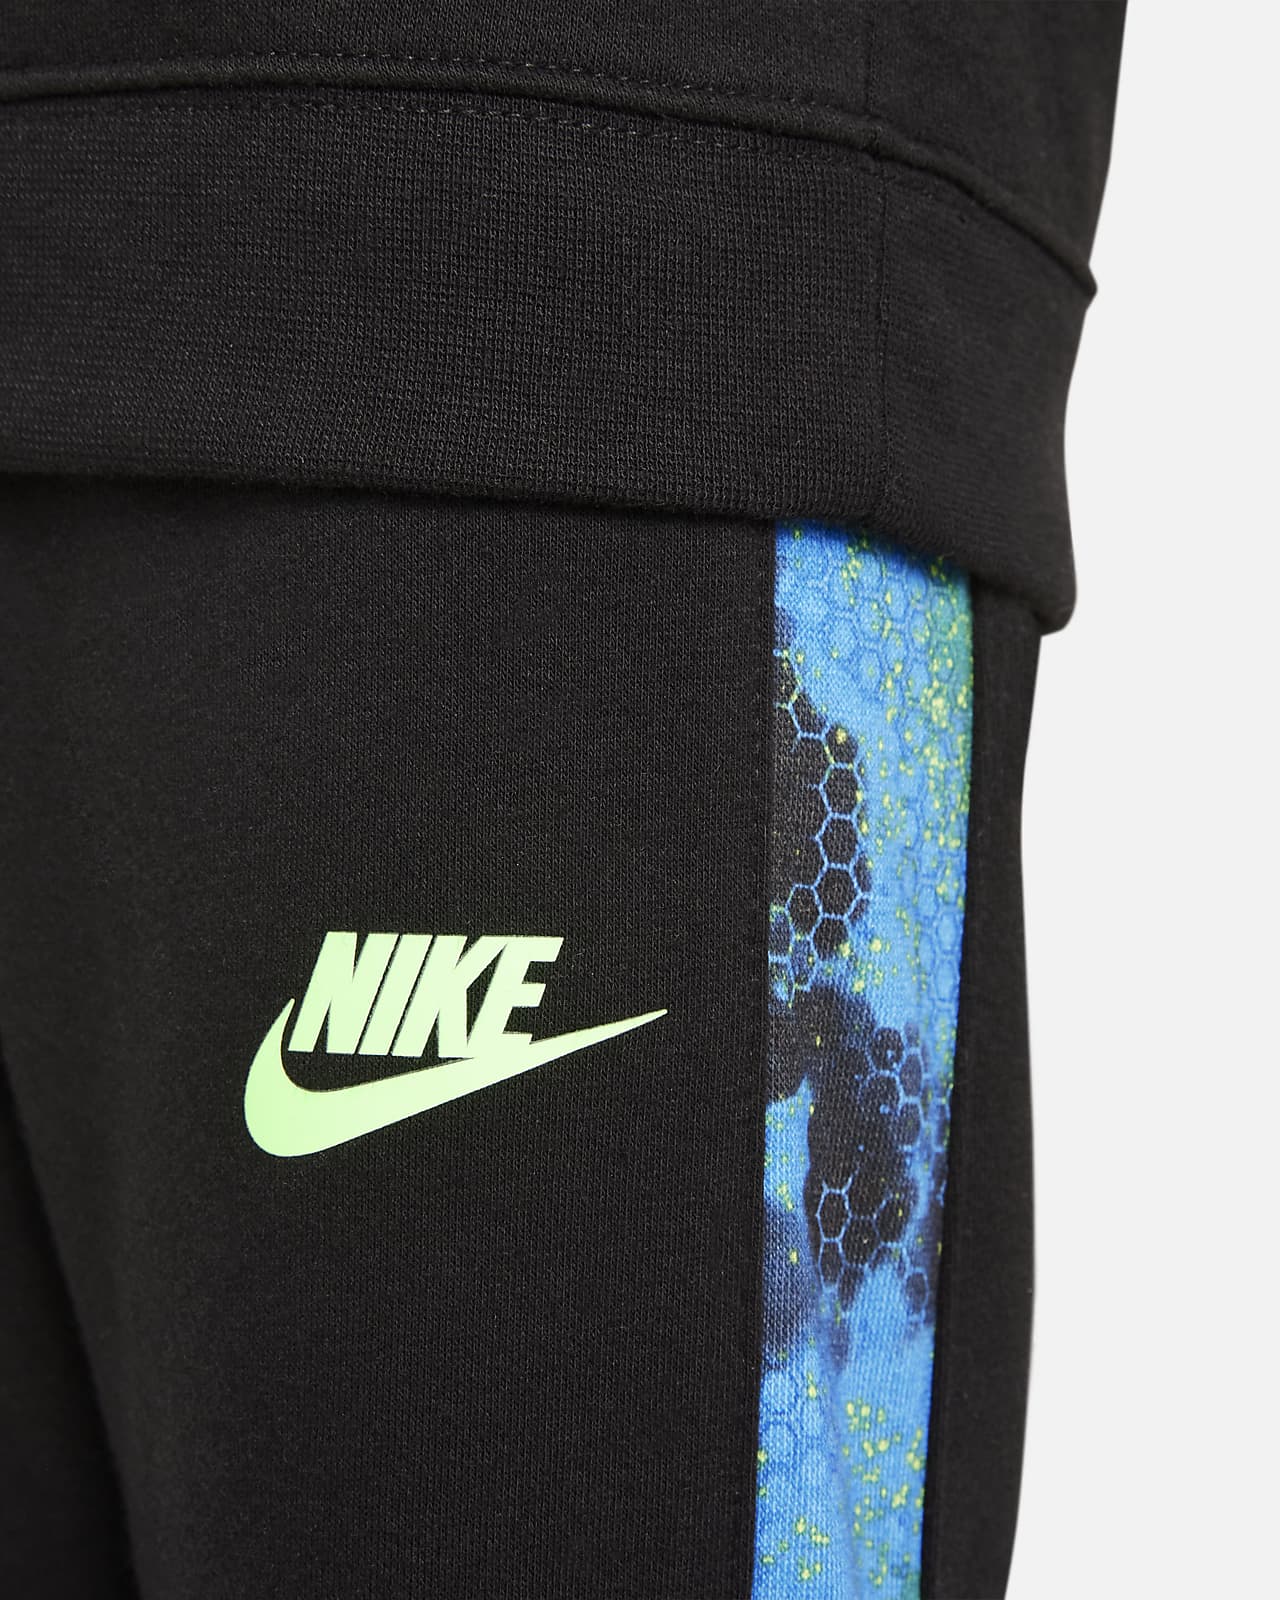 Sweatshirt Nike and Set. Pants Toddler